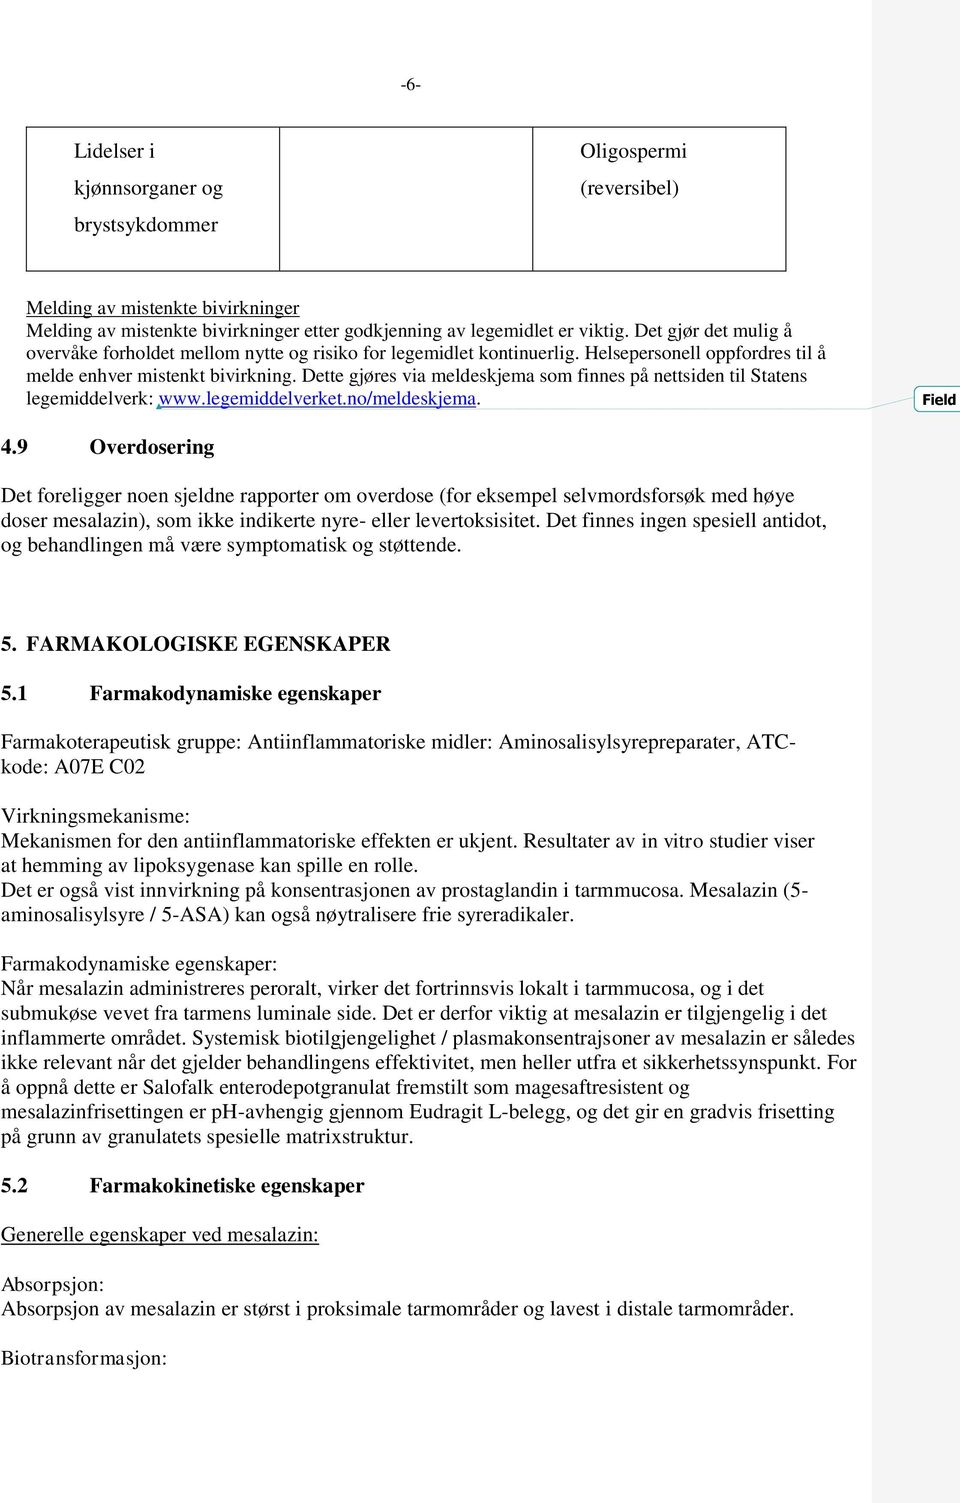 Dette gjøres via meldeskjema som finnes på nettsiden til Statens legemiddelverk: www.legemiddelverket.no/meldeskjema. Field 4.